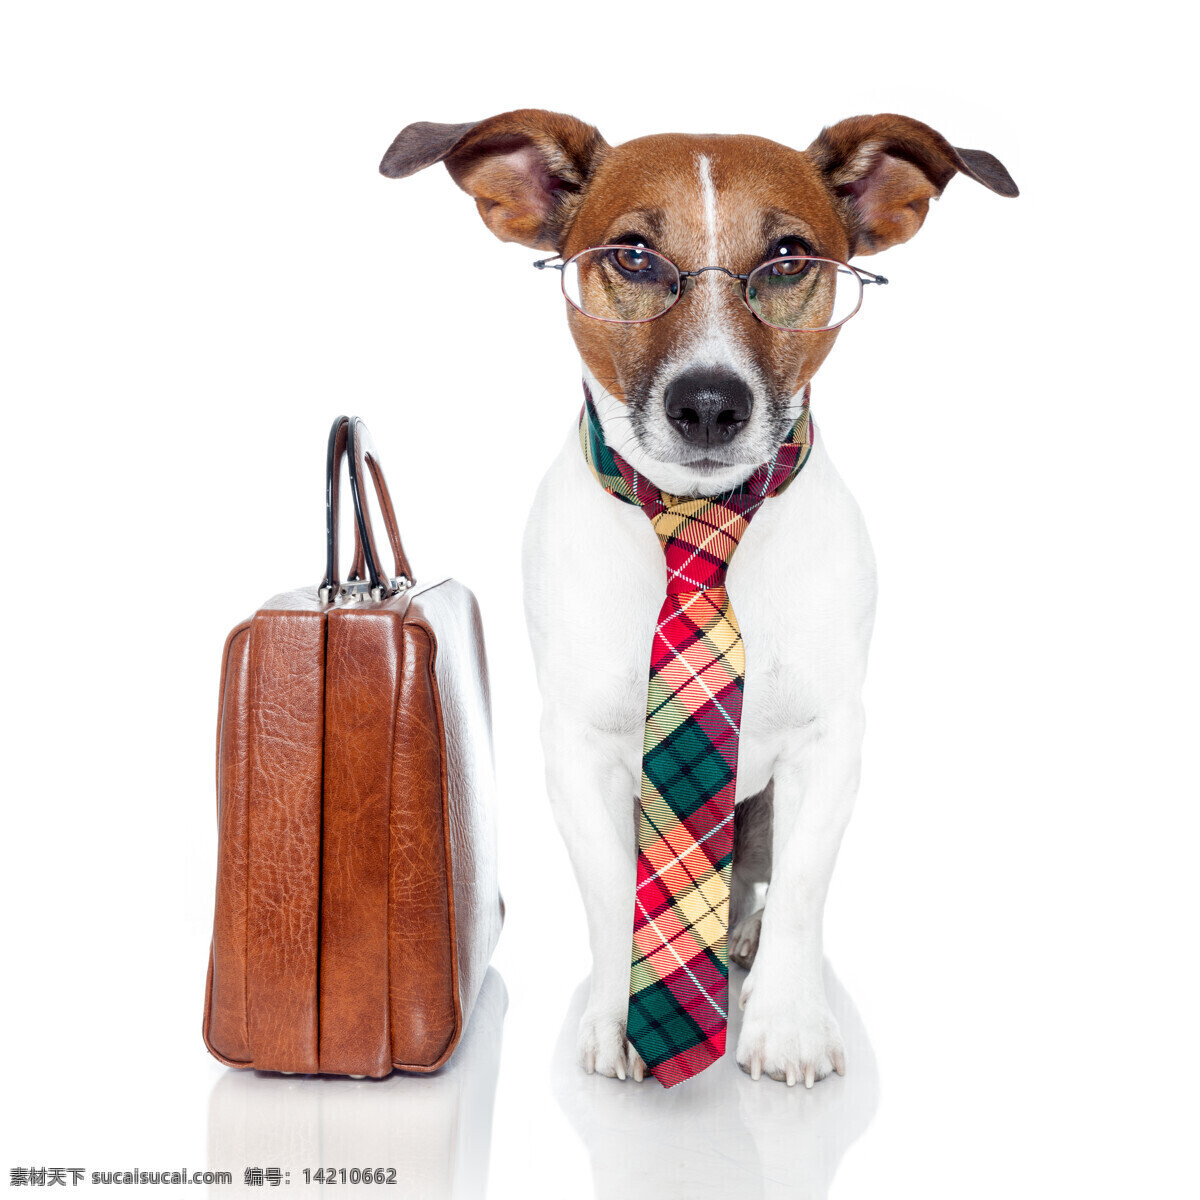 正装 小狗 公文包 领带 小狗摄影 狗 宠物 动物 动物世界 狗狗图片 生物世界